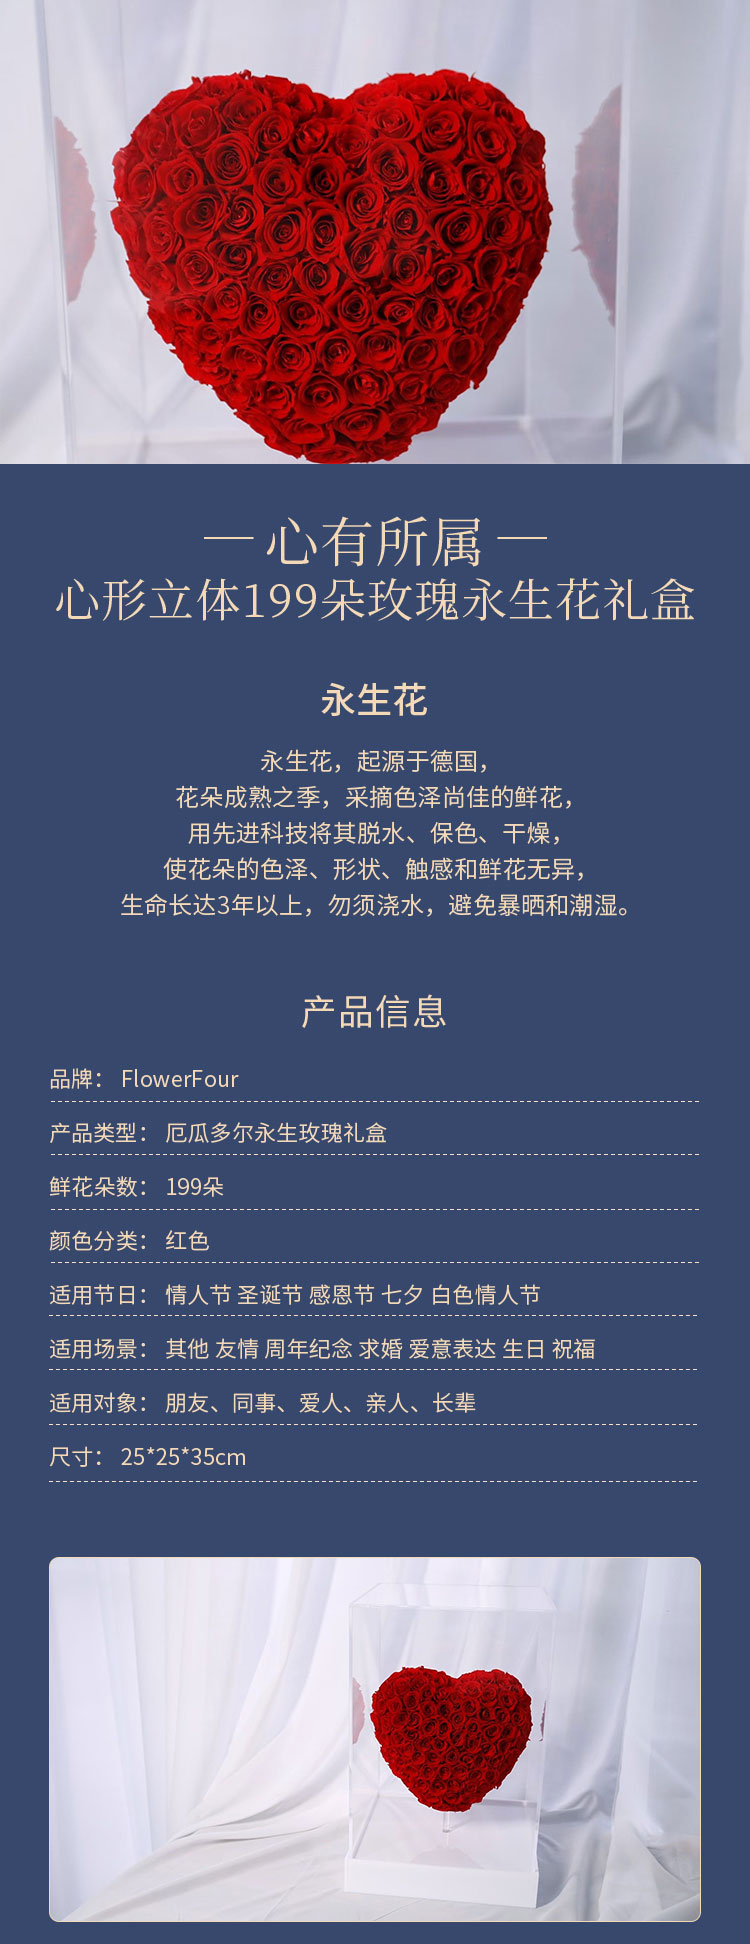 FlowerFour/FlowerFour 心有所属 心形立体199朵玫瑰永生花礼盒